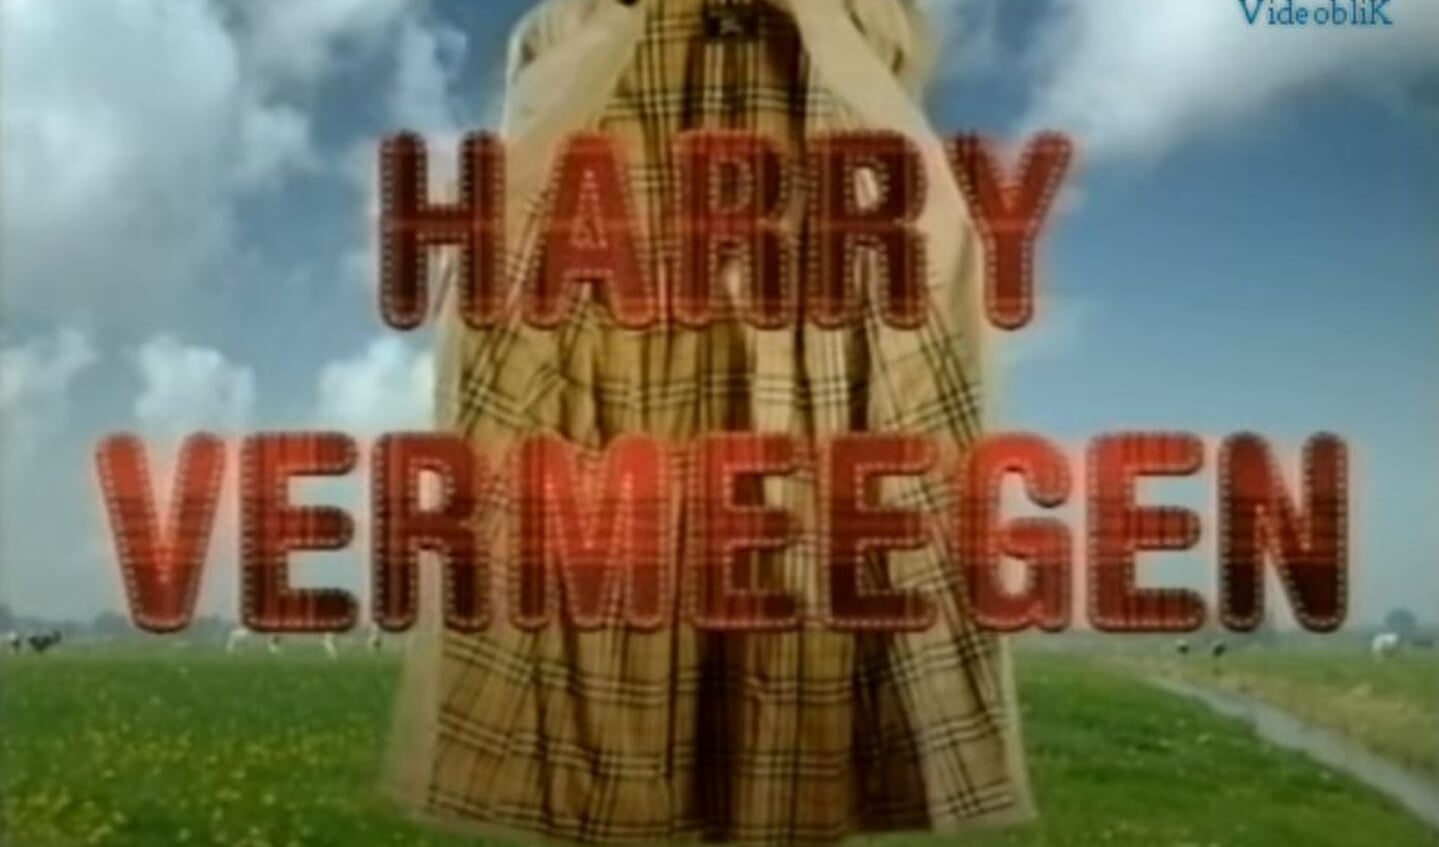 De bekende regenjas van Harry Vermeegen.